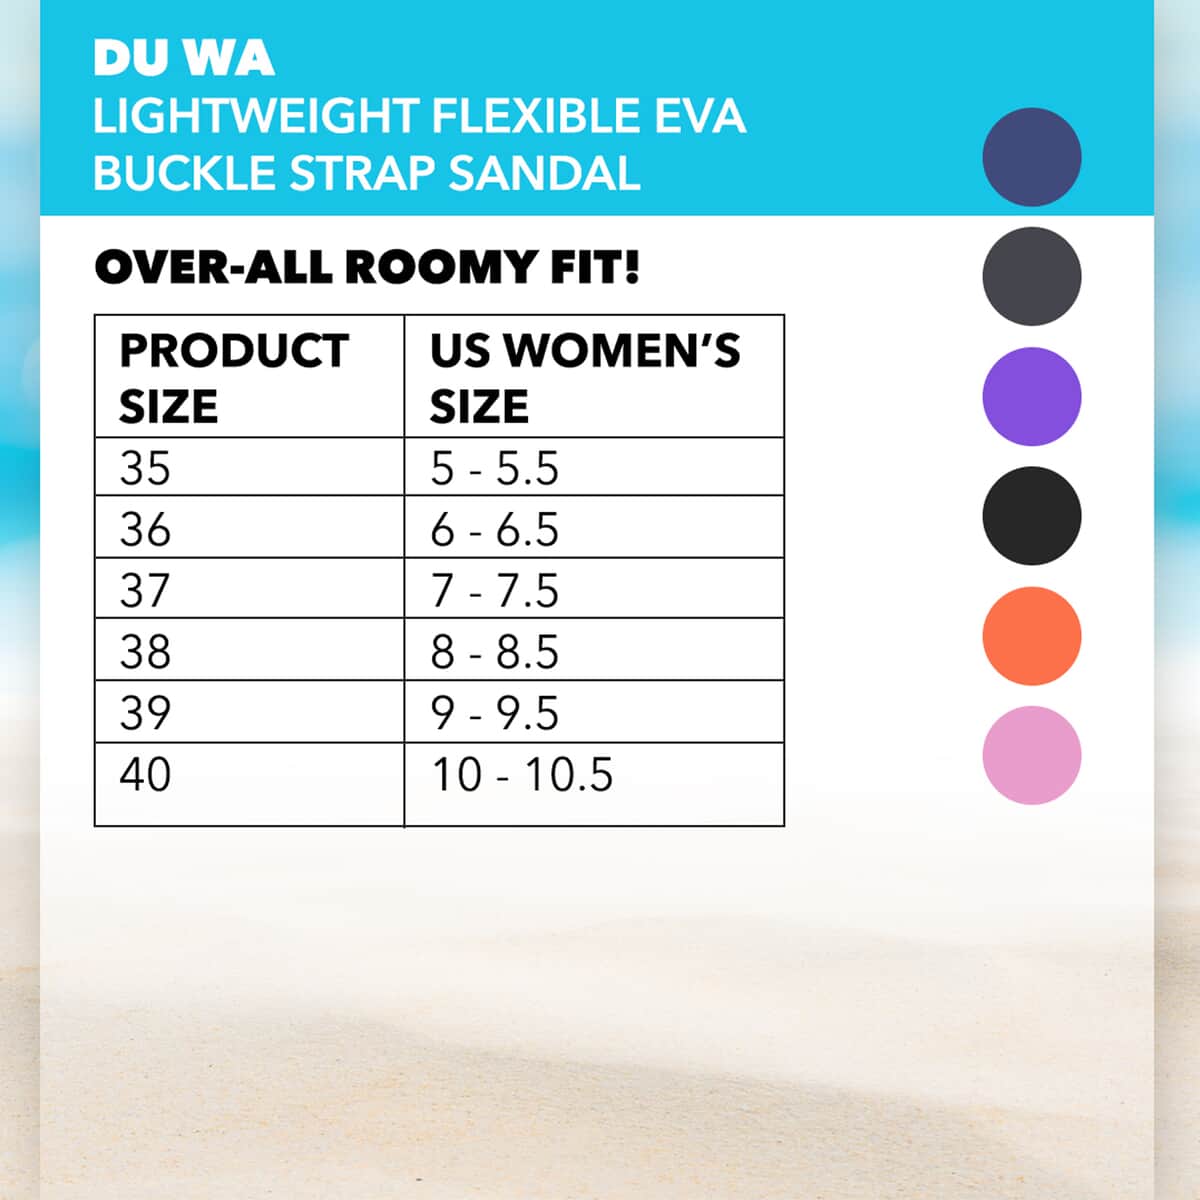 DU WA Black Ultra Lightweight Flexible EVA Buckle Strap Sandal - Size 9-9.5 image number 1